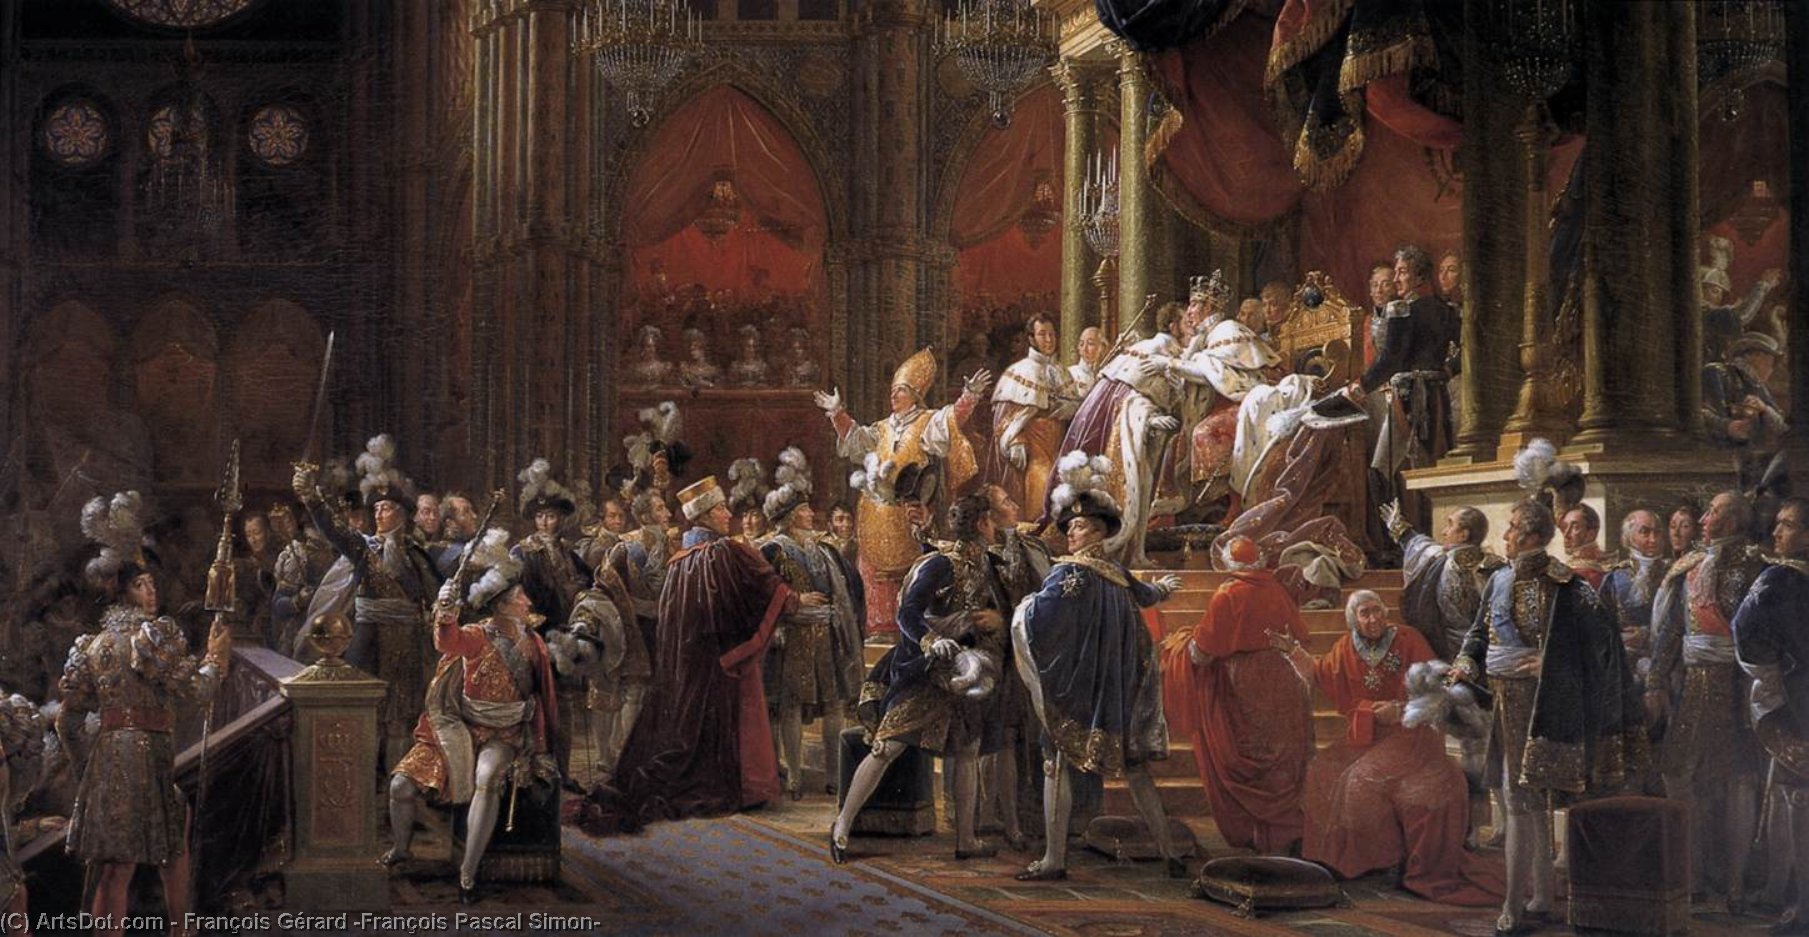 Получить Репродукции Изобразительного Искусства The Coronation of Charles X, 1827 по François Gérard (François Pascal Simon) (1770-1837, Italy) | ArtsDot.com